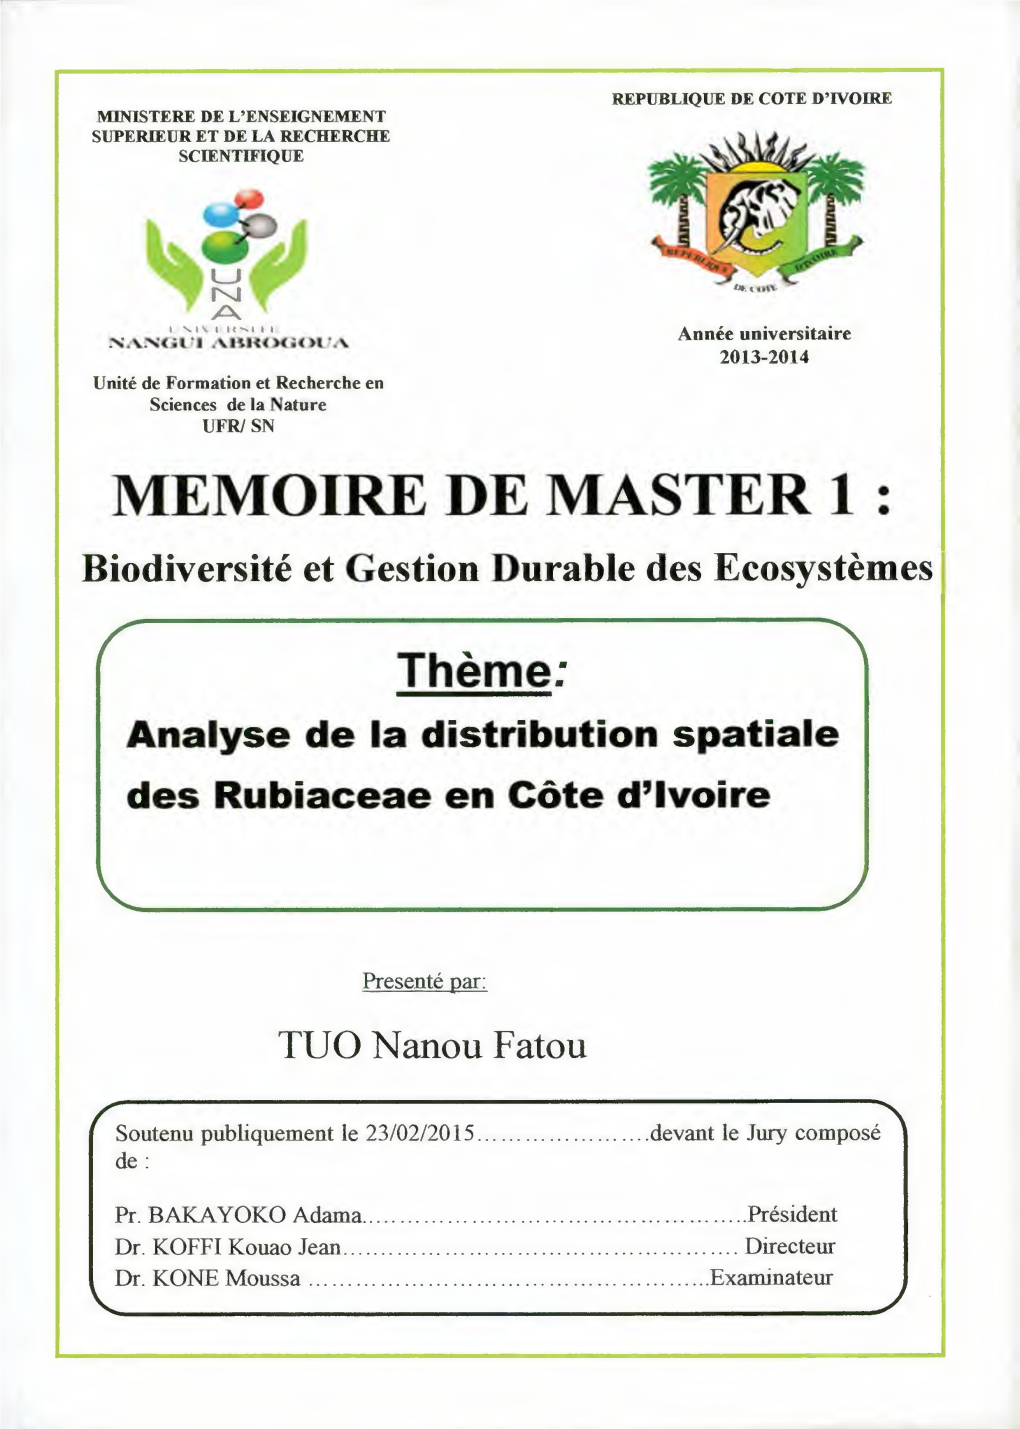 MEMOIRE DE MASTER 1 : Biodiversité Et Gestion Durable Des Ecosystèmes